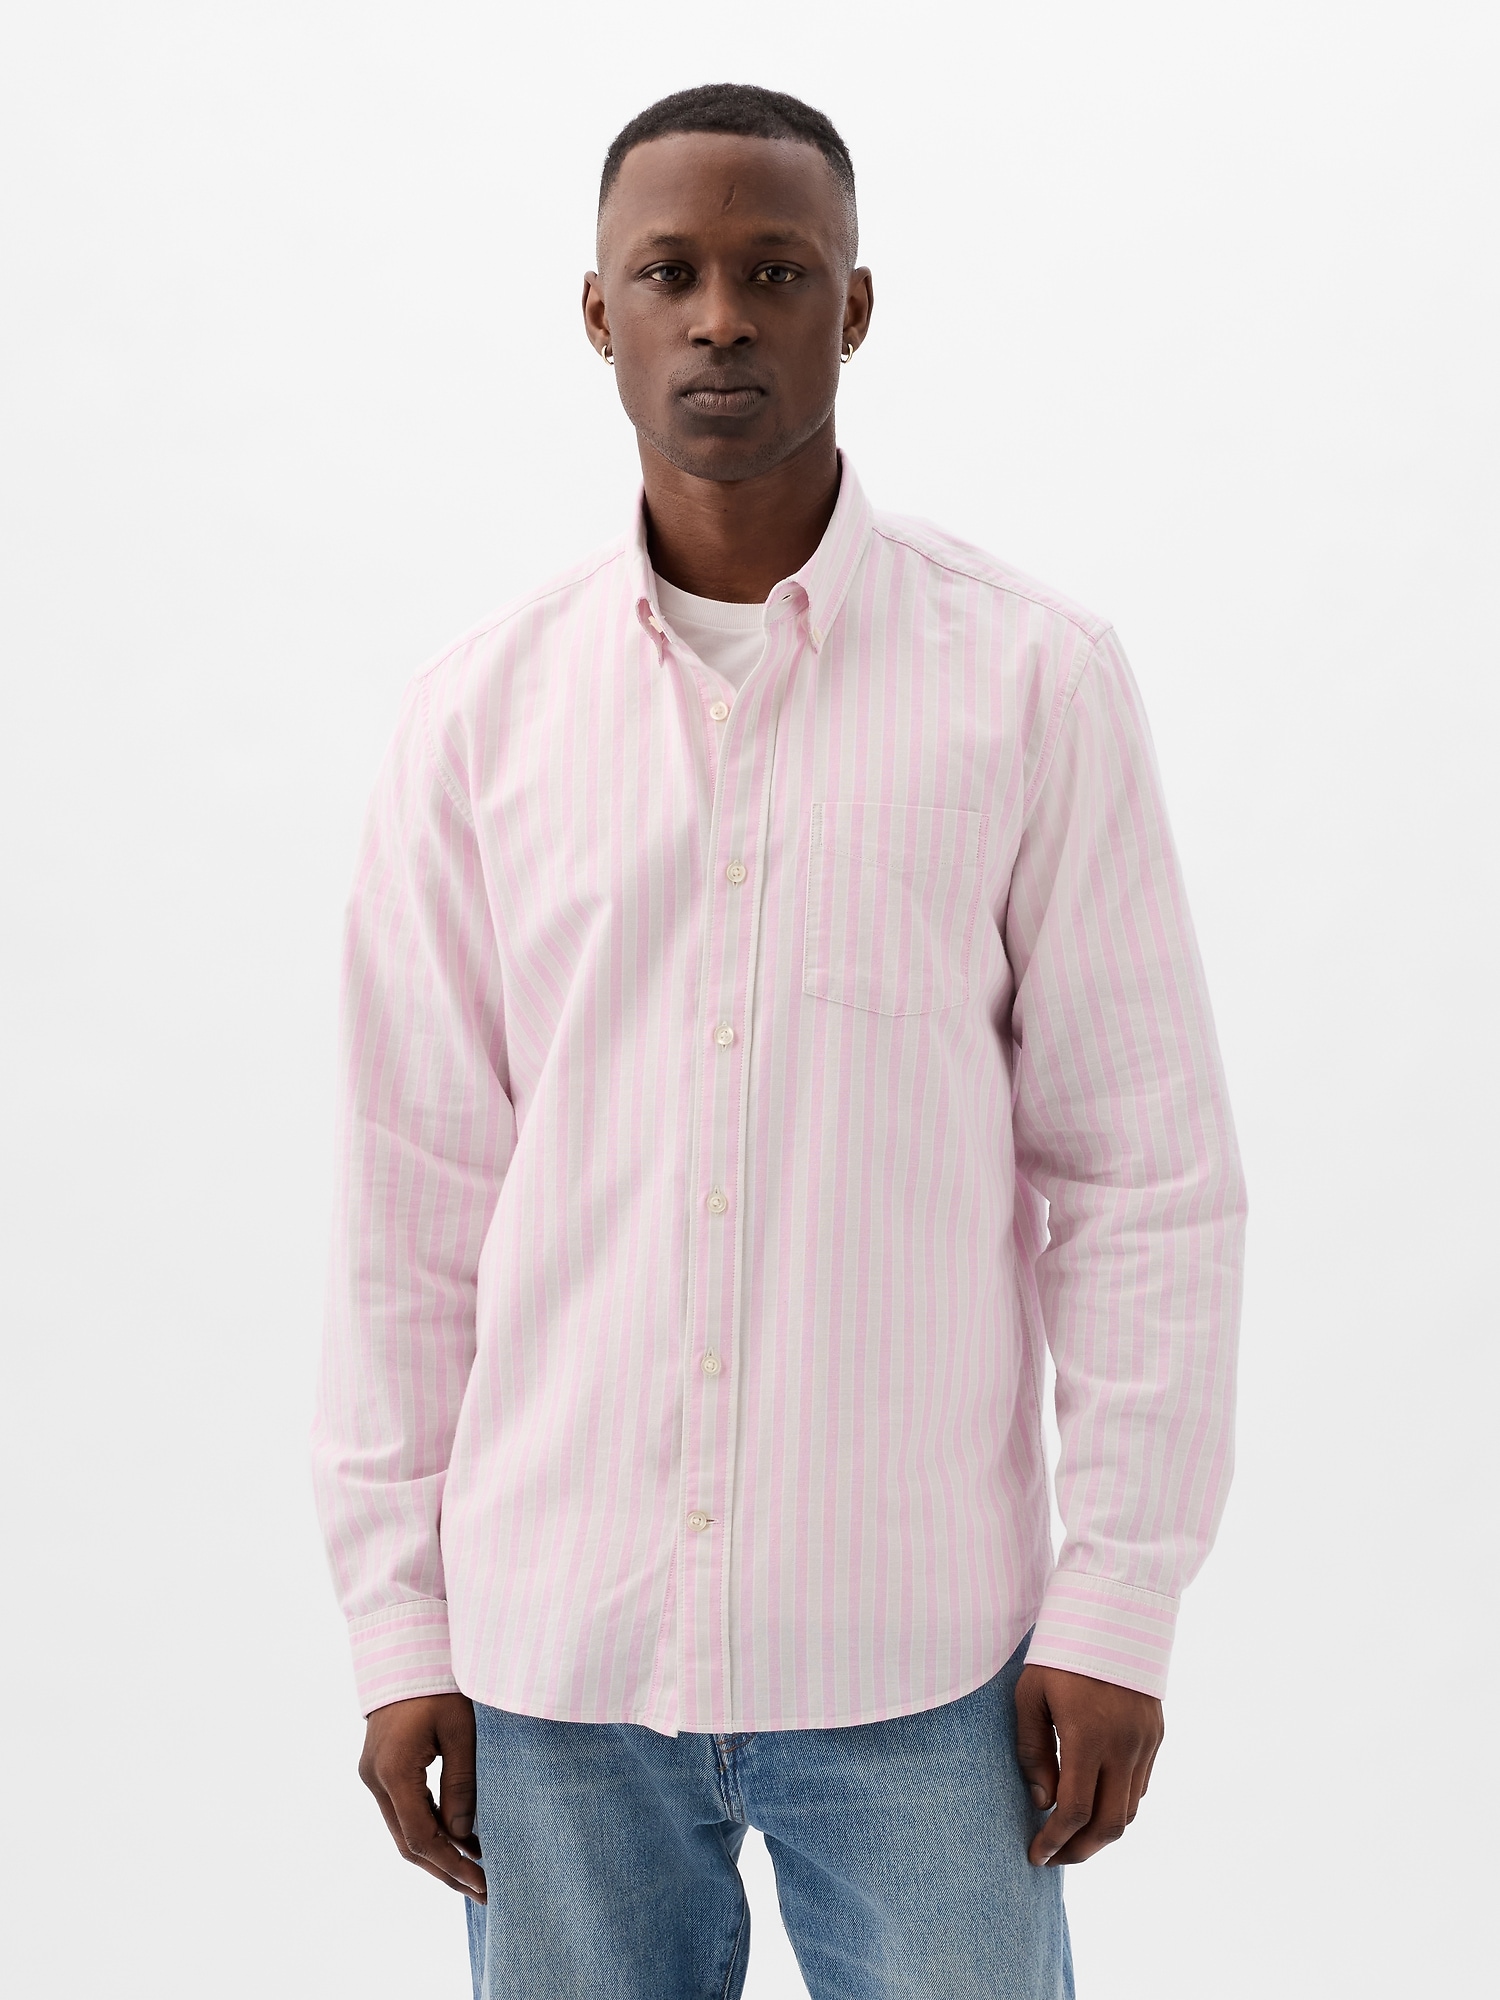 Gap Classic Oxford Shirt In Standard Fit In Multi Pink Stripe